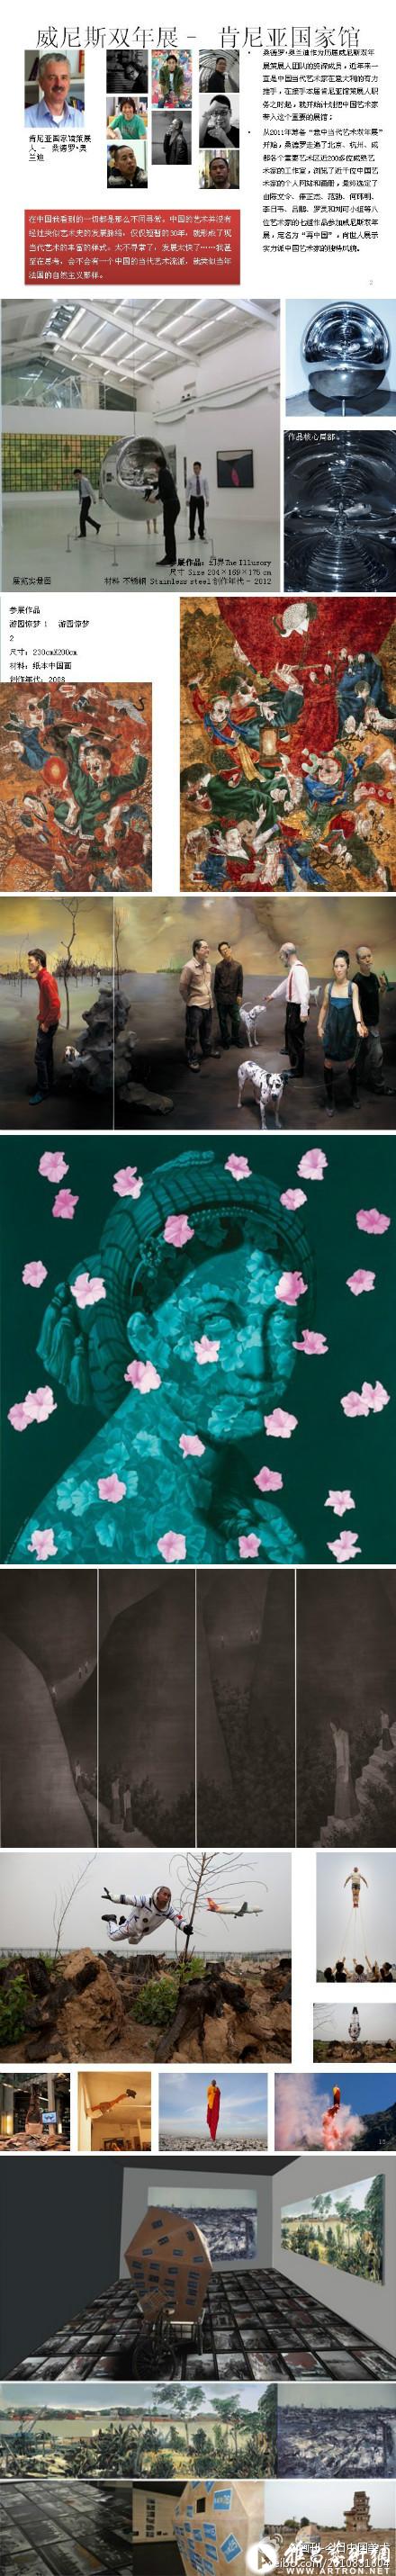 威尼斯双年展肯尼亚馆策展人桑德罗•奥兰迪选定八位中国艺术家参展